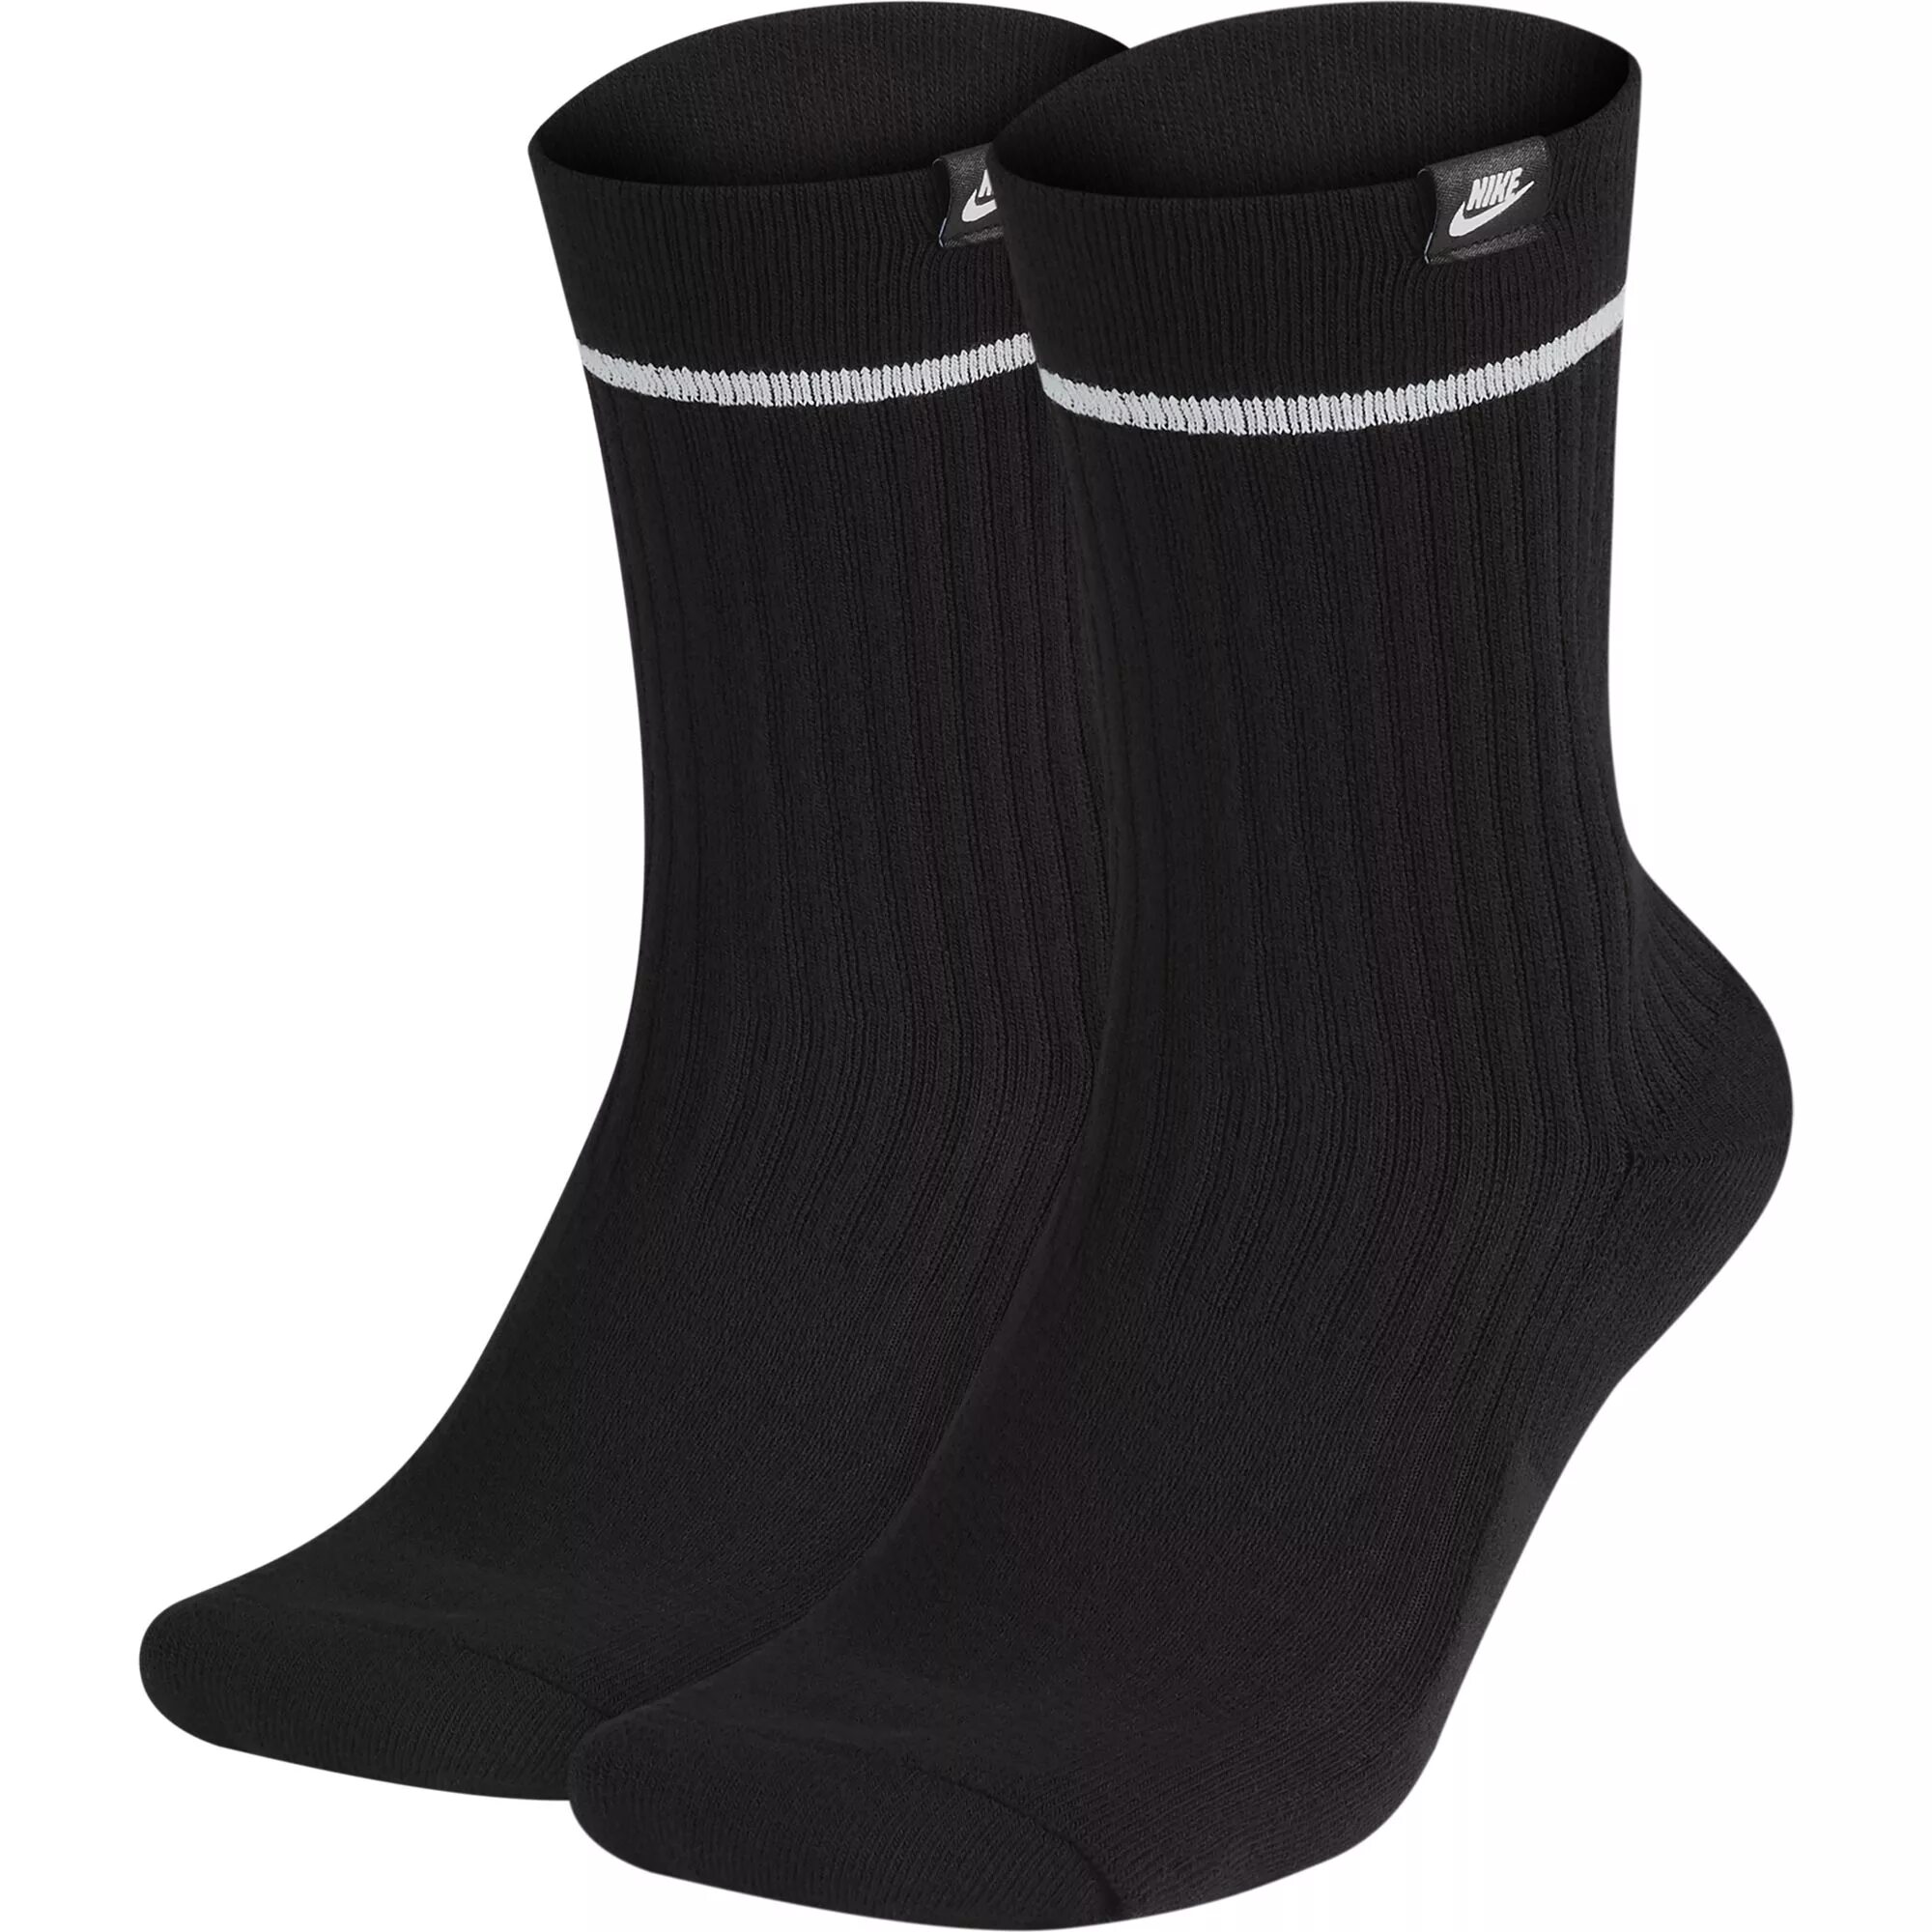 Черные носки найк. Мужские носки Nike 2 pairs. Носки Nike Essential. Носки найк высокие. Носки найк черные.